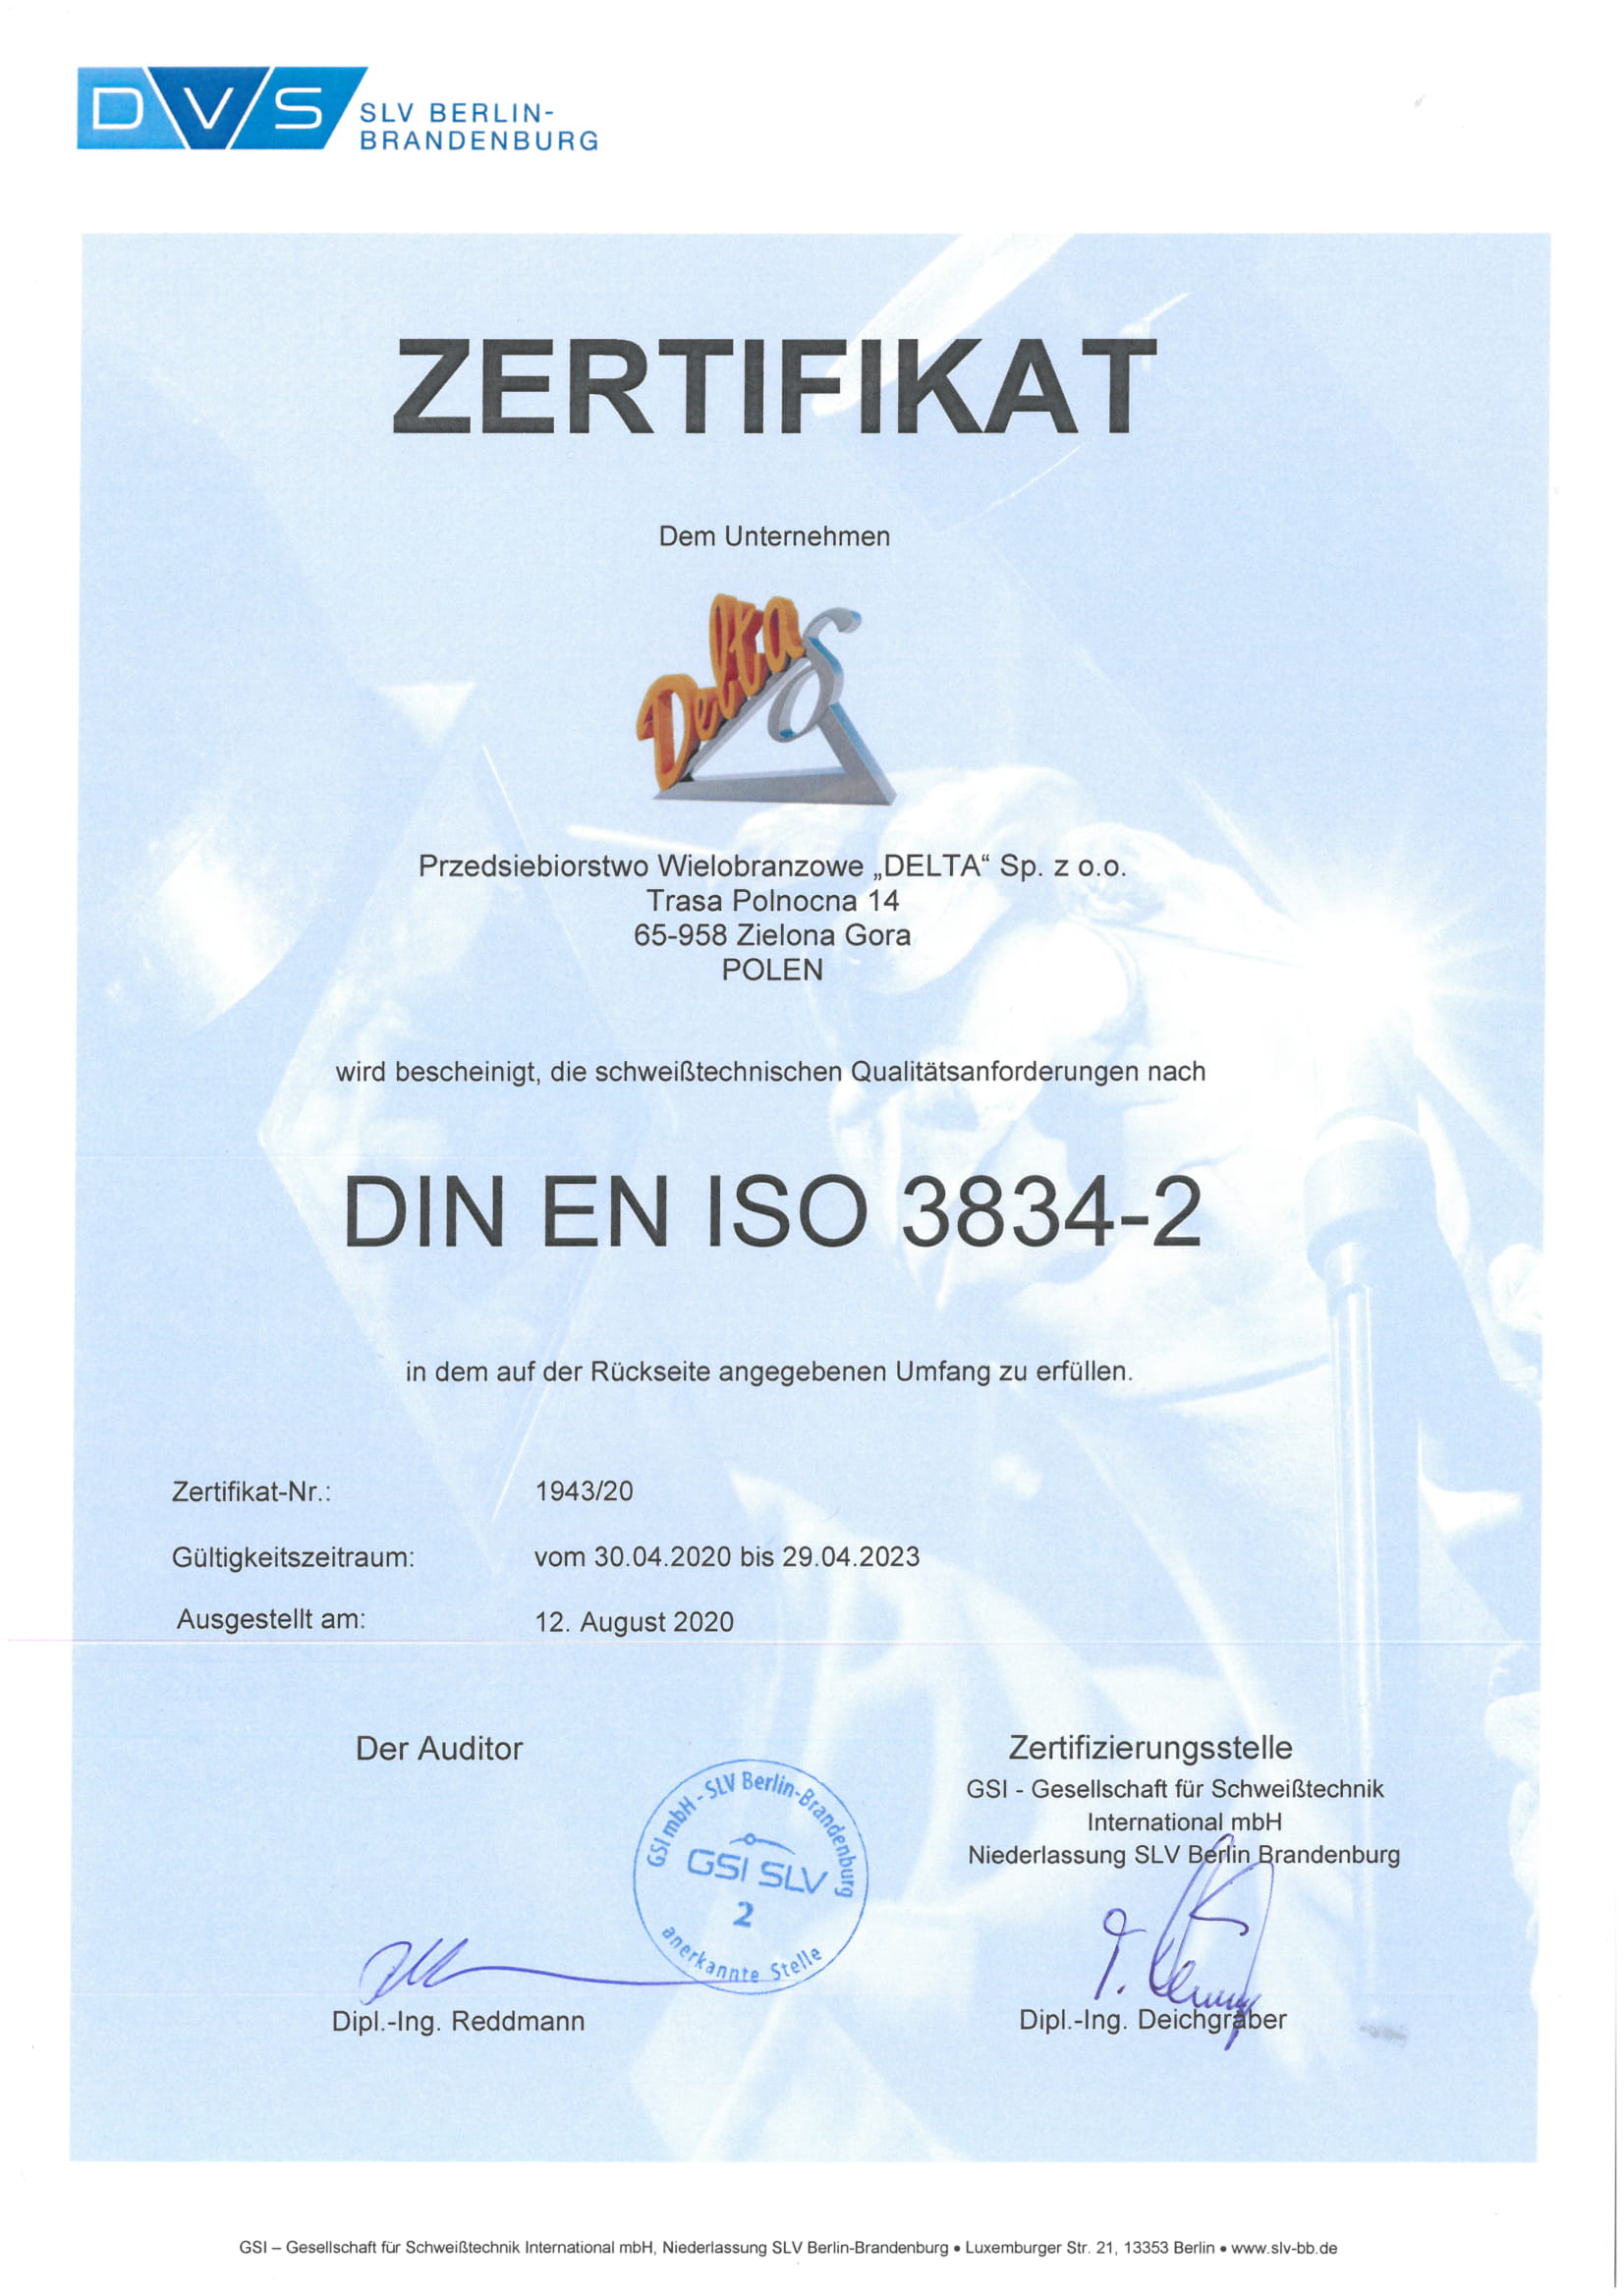 certyfikat z zaświadczeniem po niemiecku